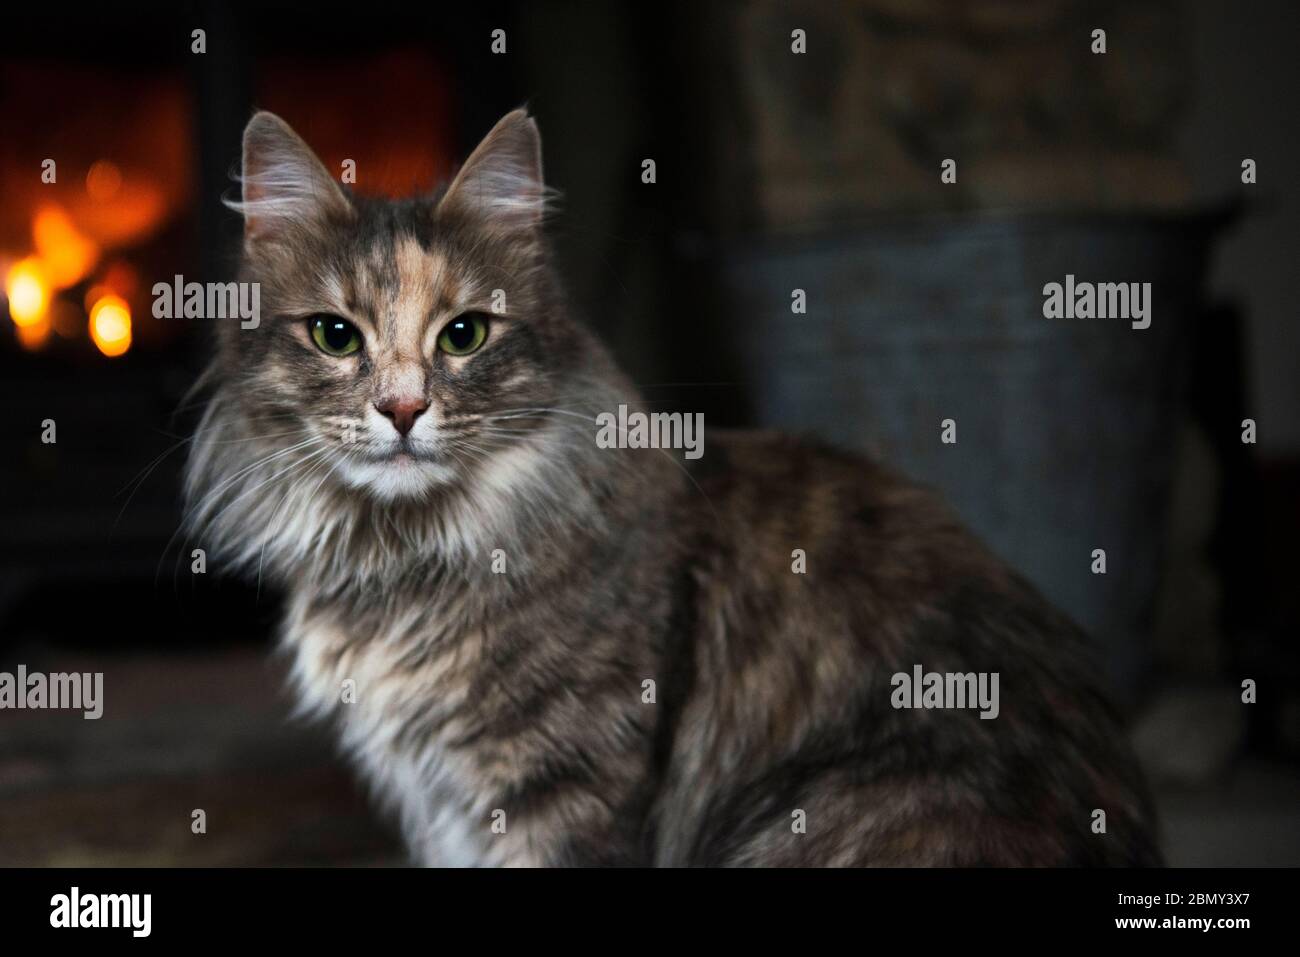 Turkish Angora cat Stock Photo